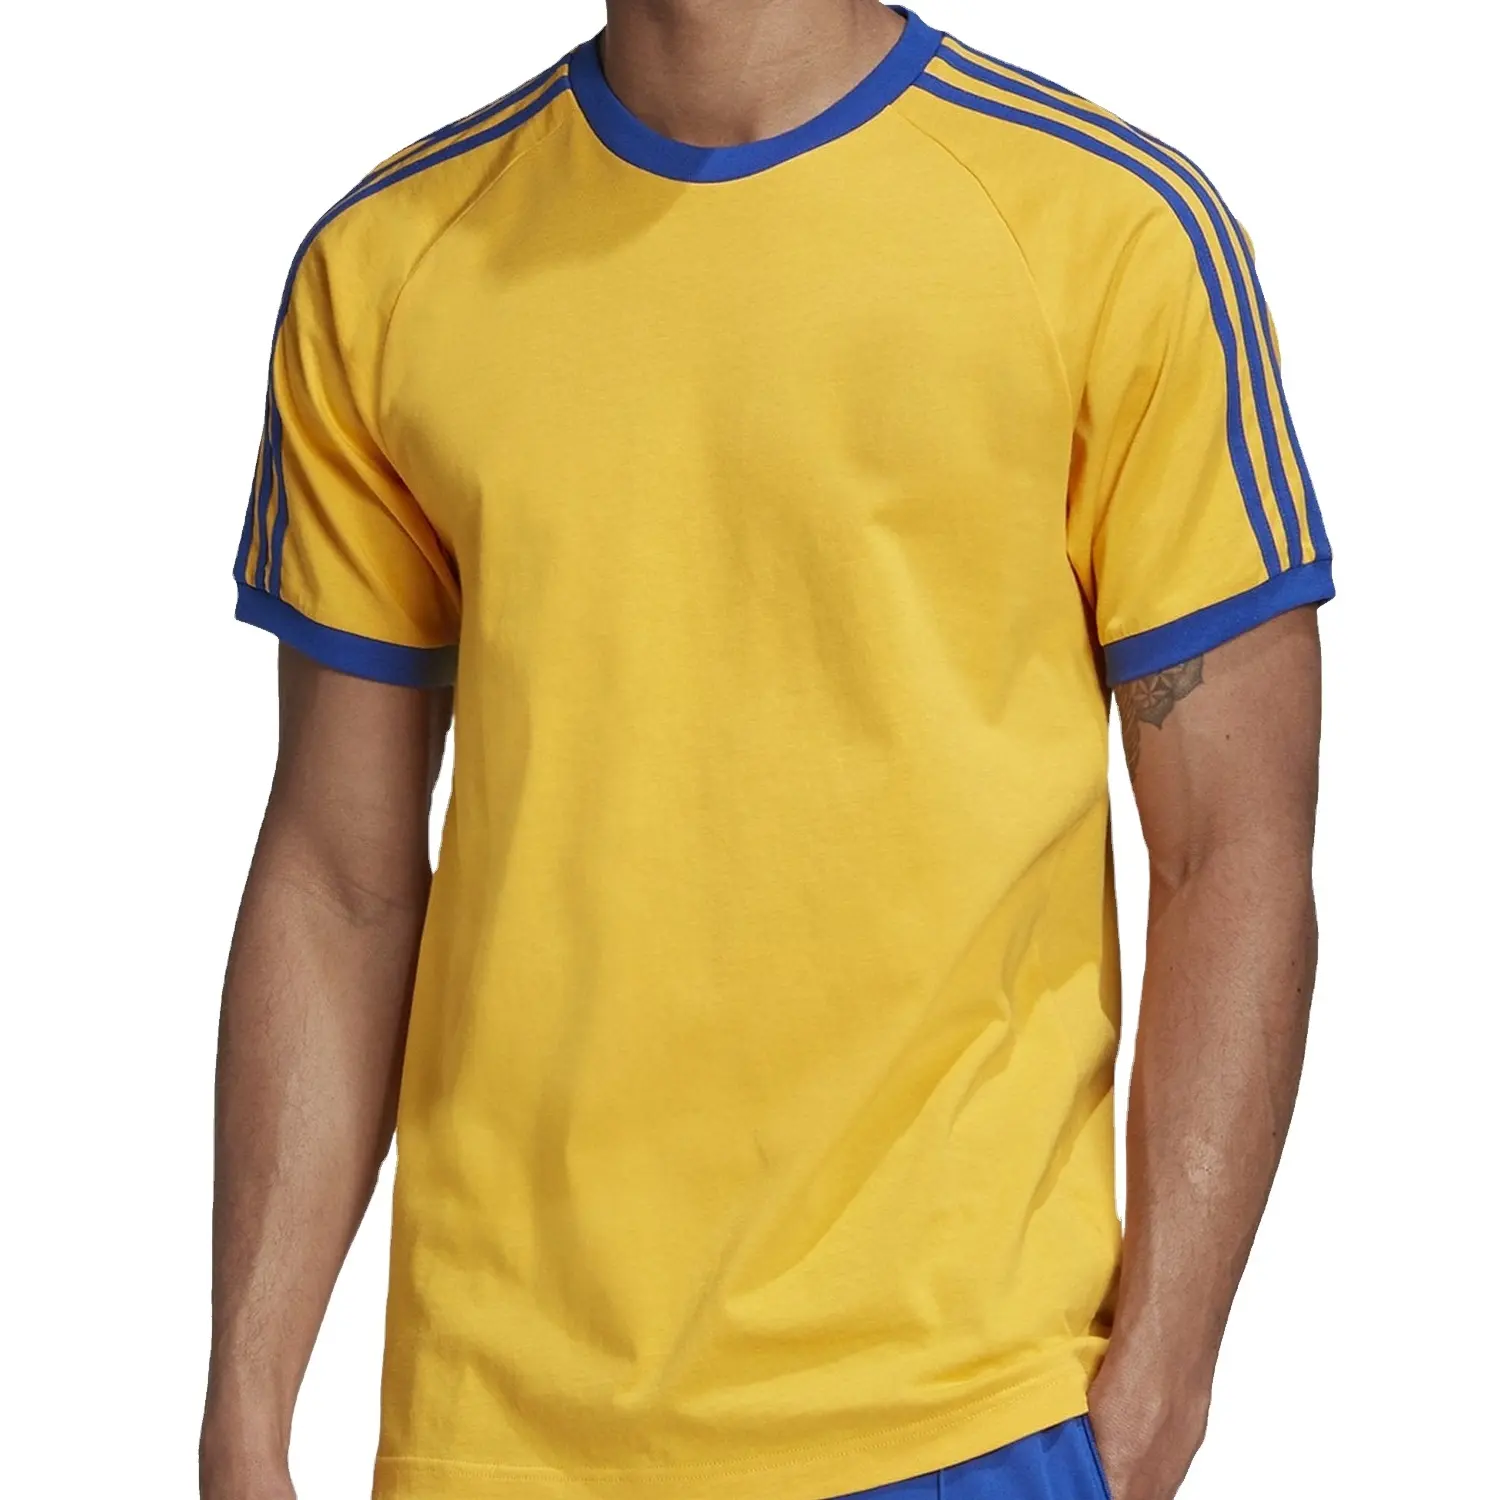 El mejor precio para hombres Camisetas de algodón Camisa amarilla con camisetas de tira azul Nuevo modelo Camisetas Ropa de hombre